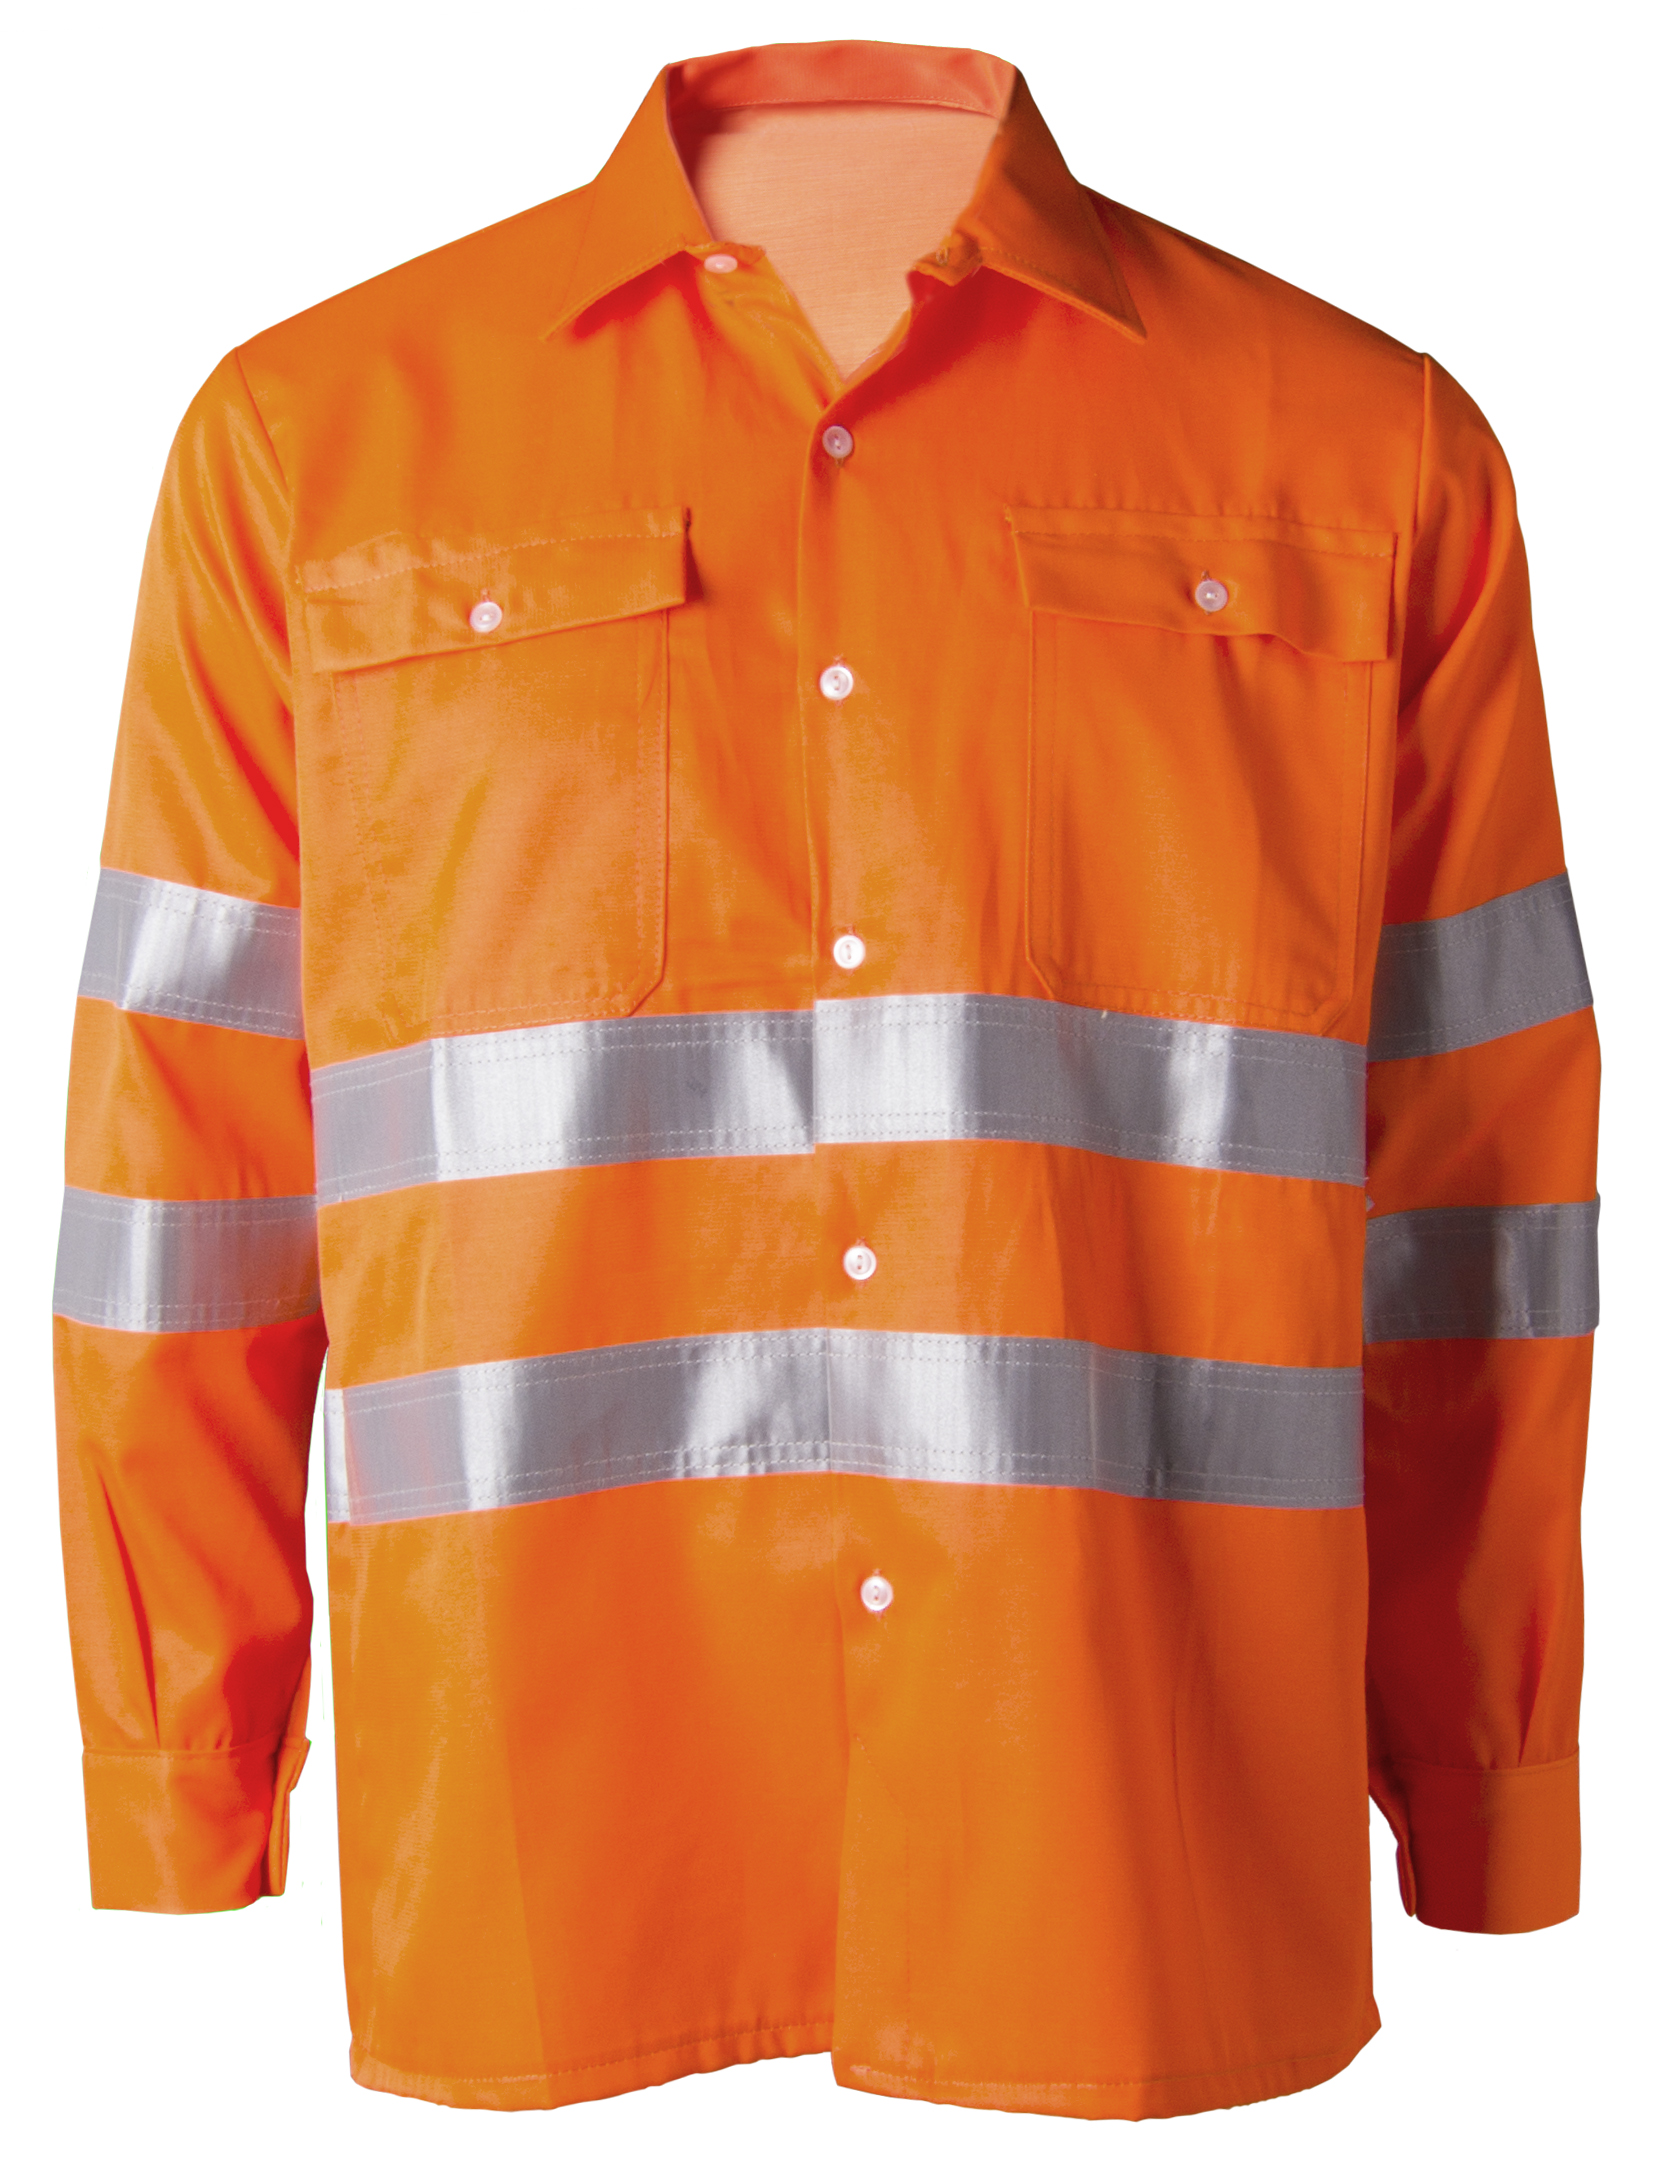 Camisa naranja flúor alta visibilidad Image